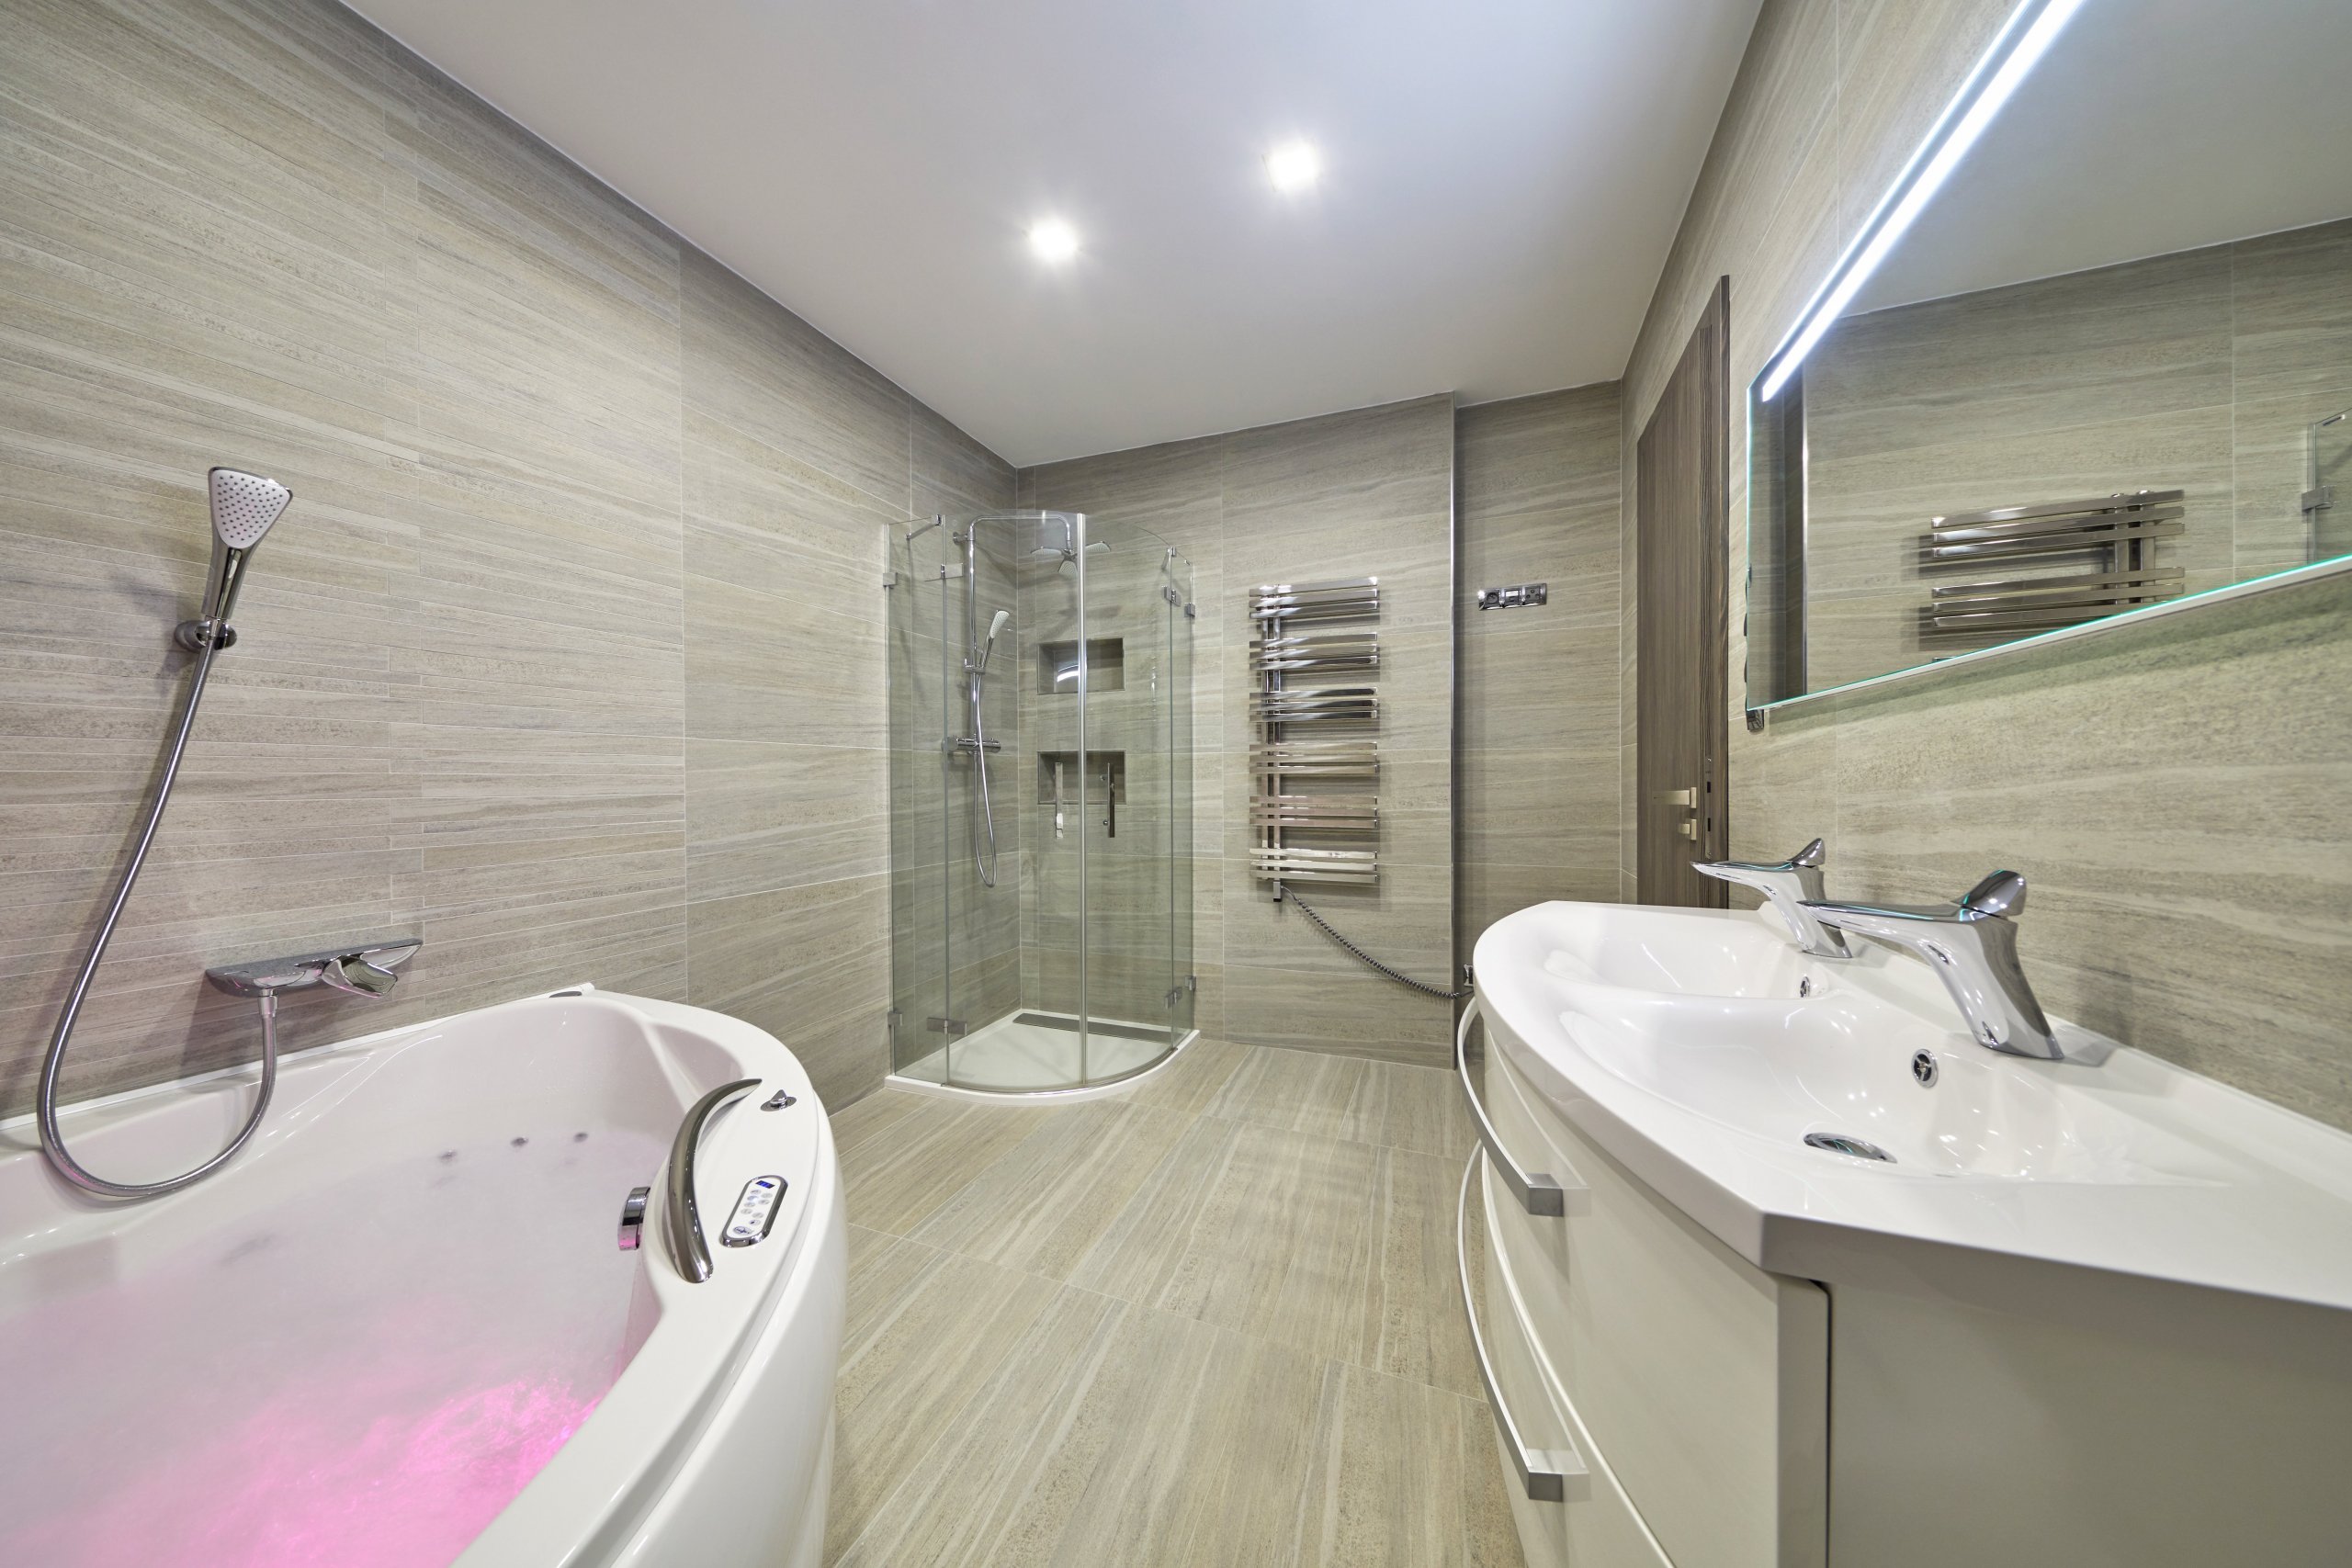 Velmi prostorná koupelna s velkoformátovými obklady a dlažbou od italského vyrobce ABK. V prostoru se se opakuje oválný tvar u hydromasážní vany, sprchového…